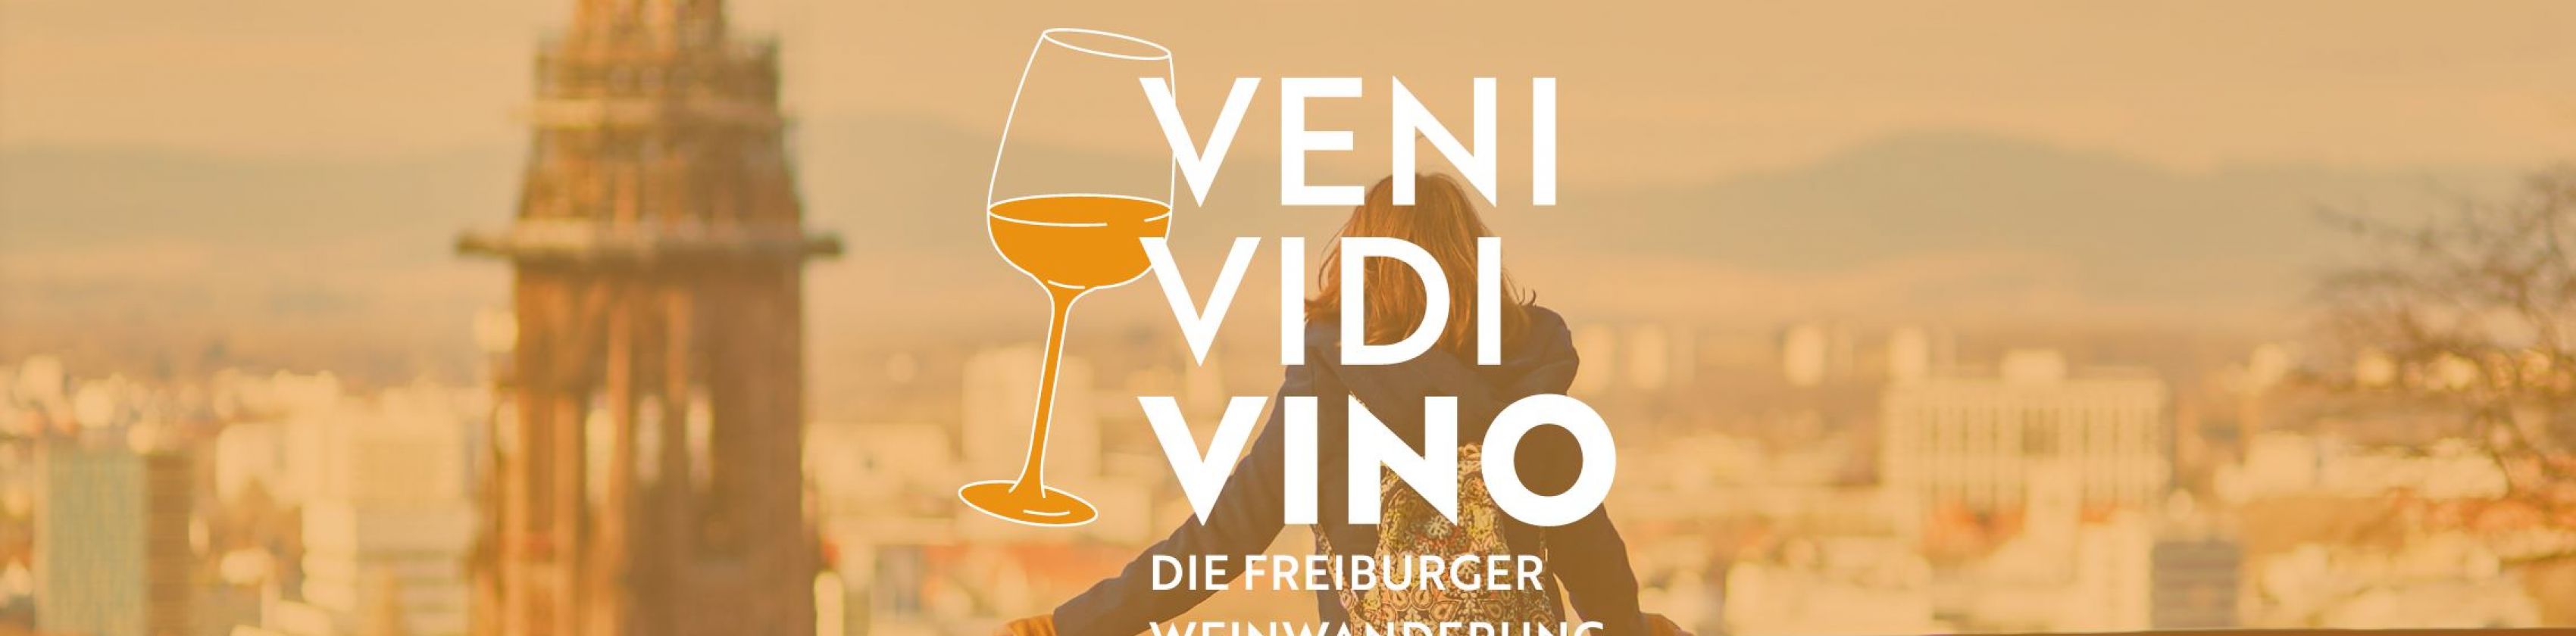 Veni, vidi, vino: ¡la ruta del vino de Friburgo! - La ruta del vino en el Schlossberg de Friburgo con las Guías del Vino